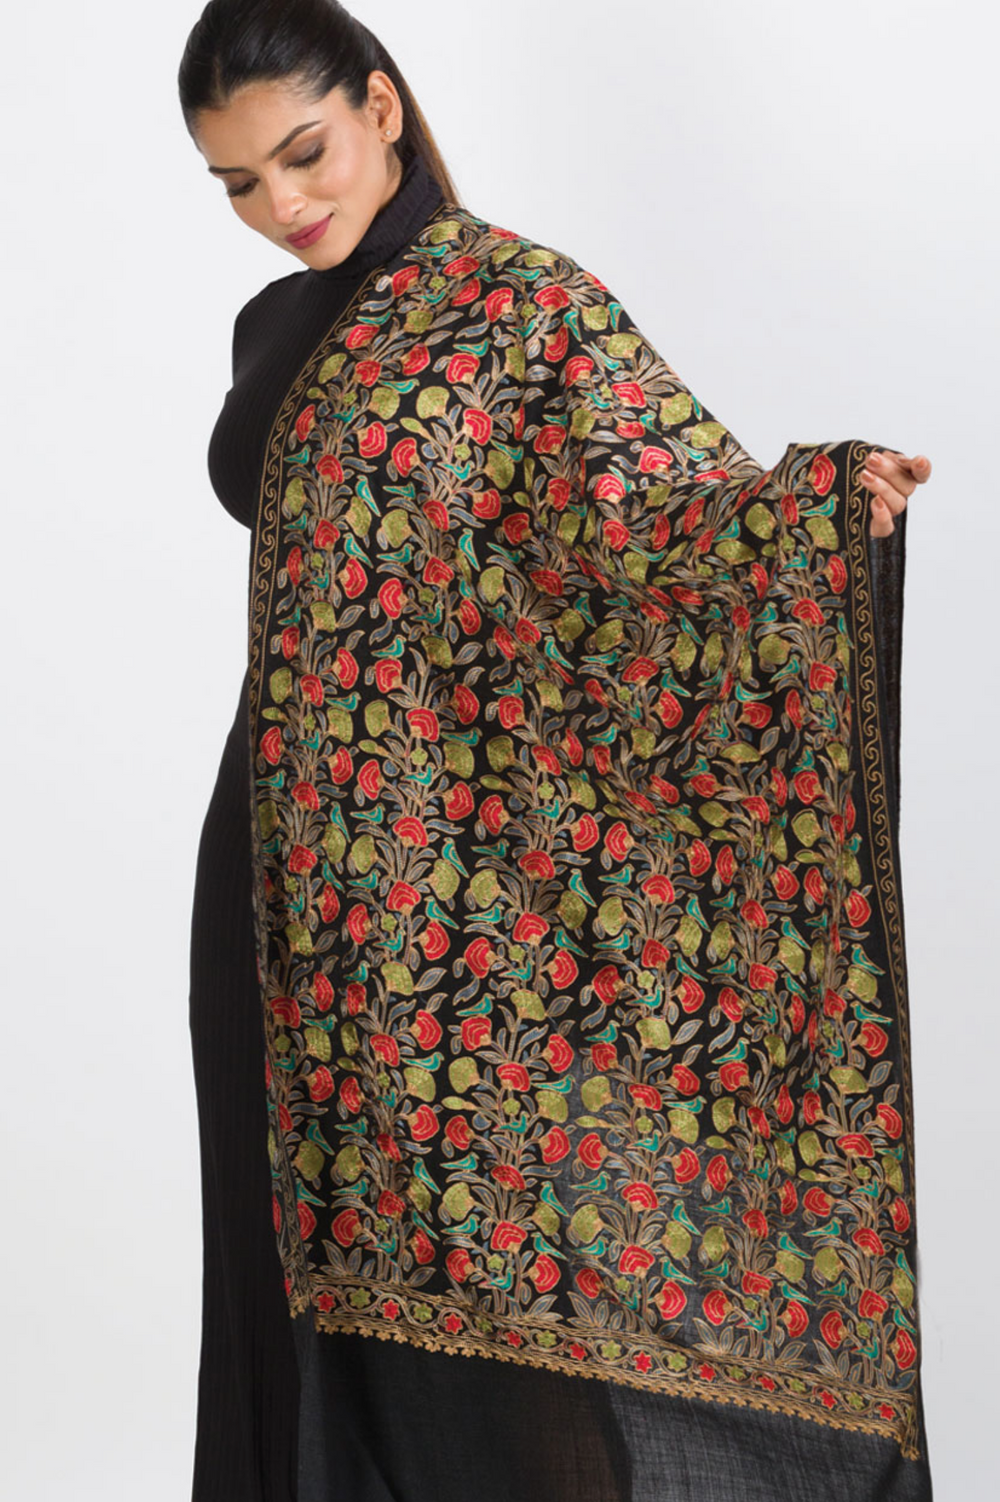 Sevya Veena shawl, embroidered